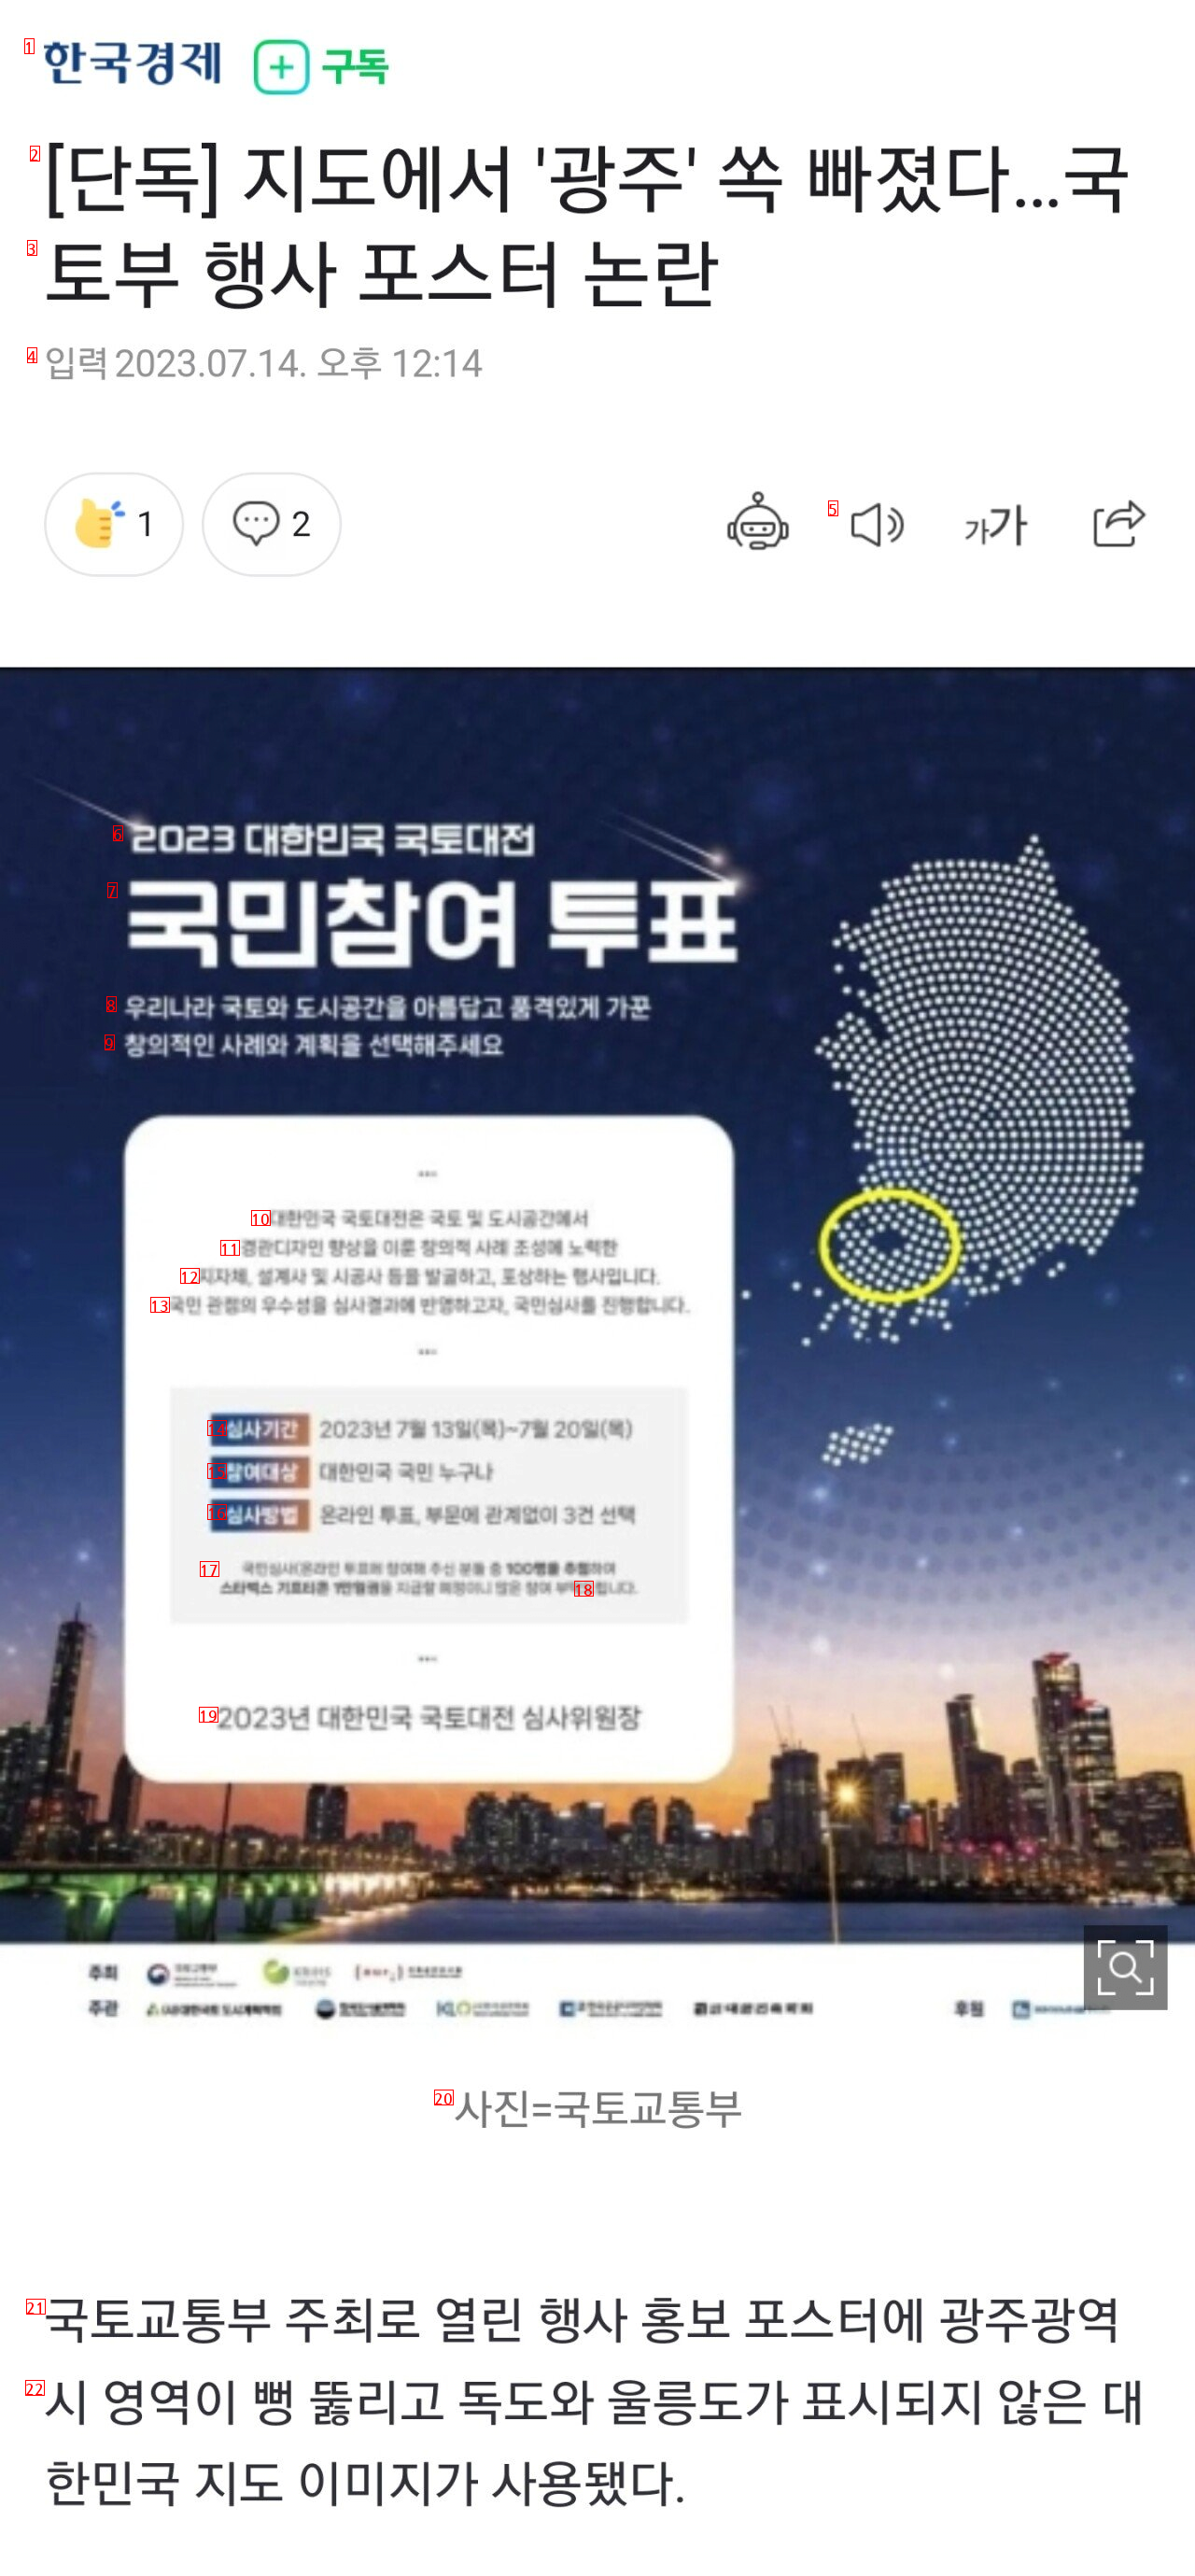 [단독] 지도에서 ''광주'' 쏙 빠졌다…국토부 행사 포스터 논란